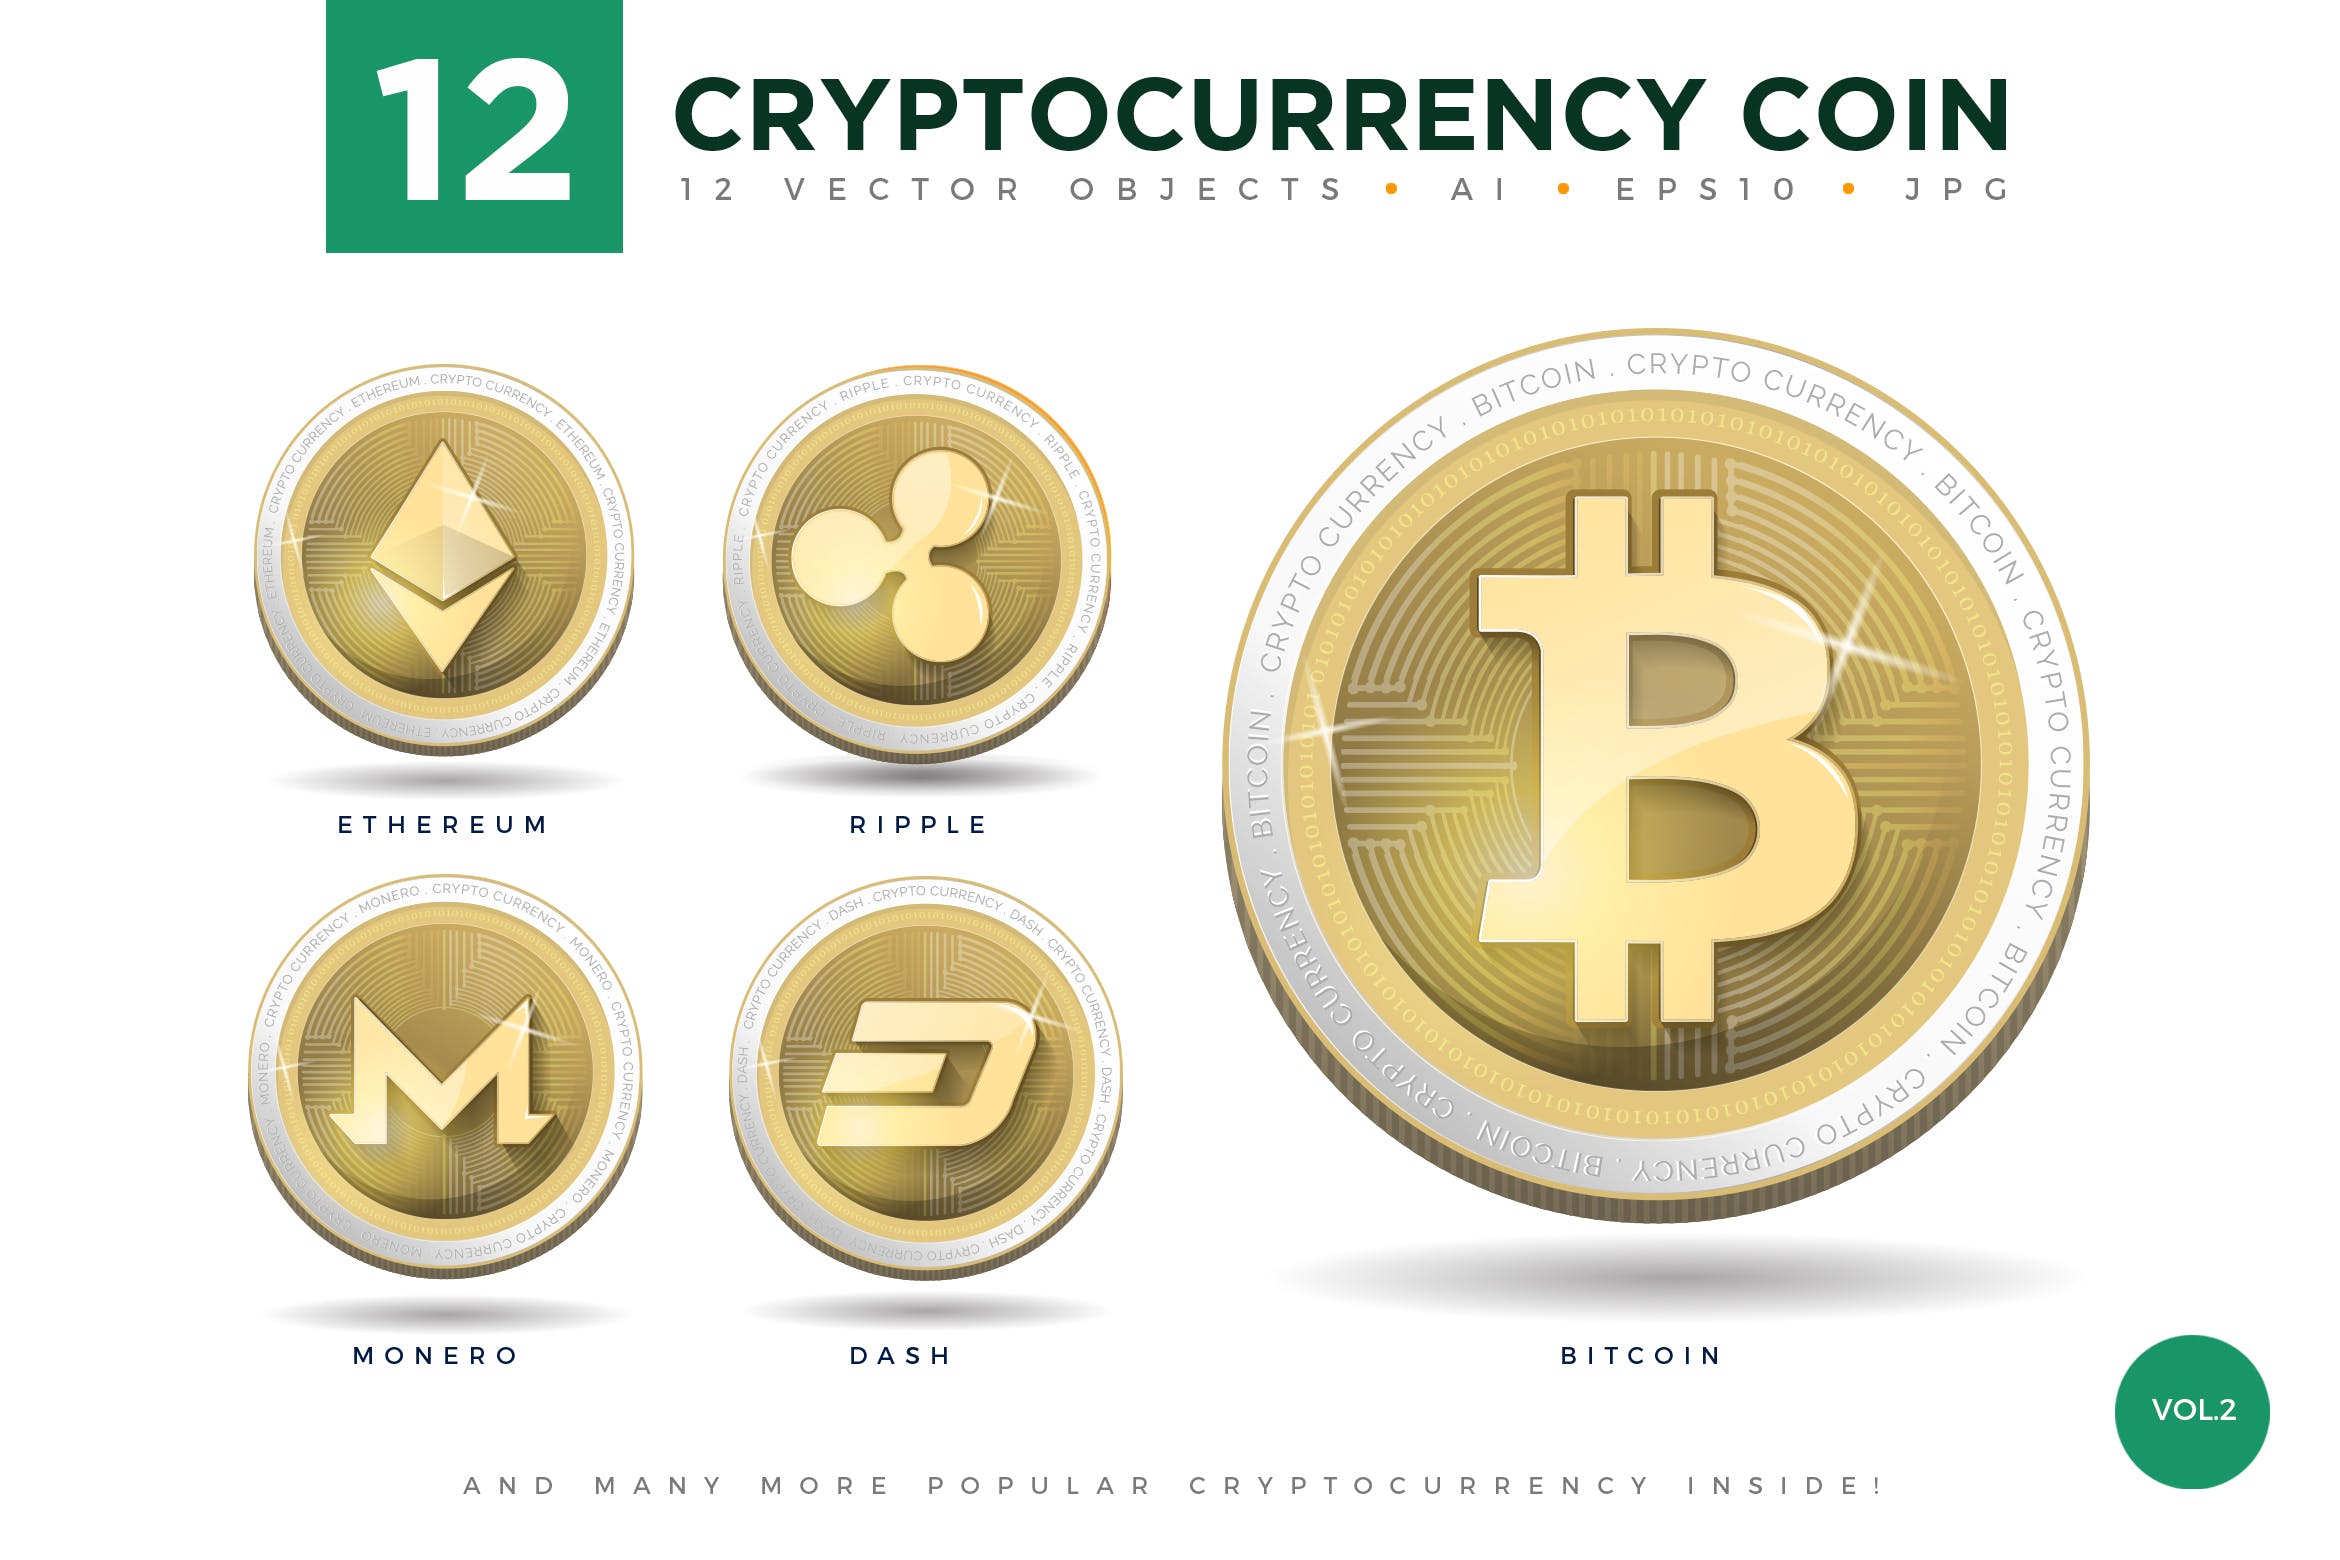 12枚加密货币主题硬币形状矢量非凡图库精选图标合集v2 12 Crypto Currency Coin Vector Illustration Set 2插图